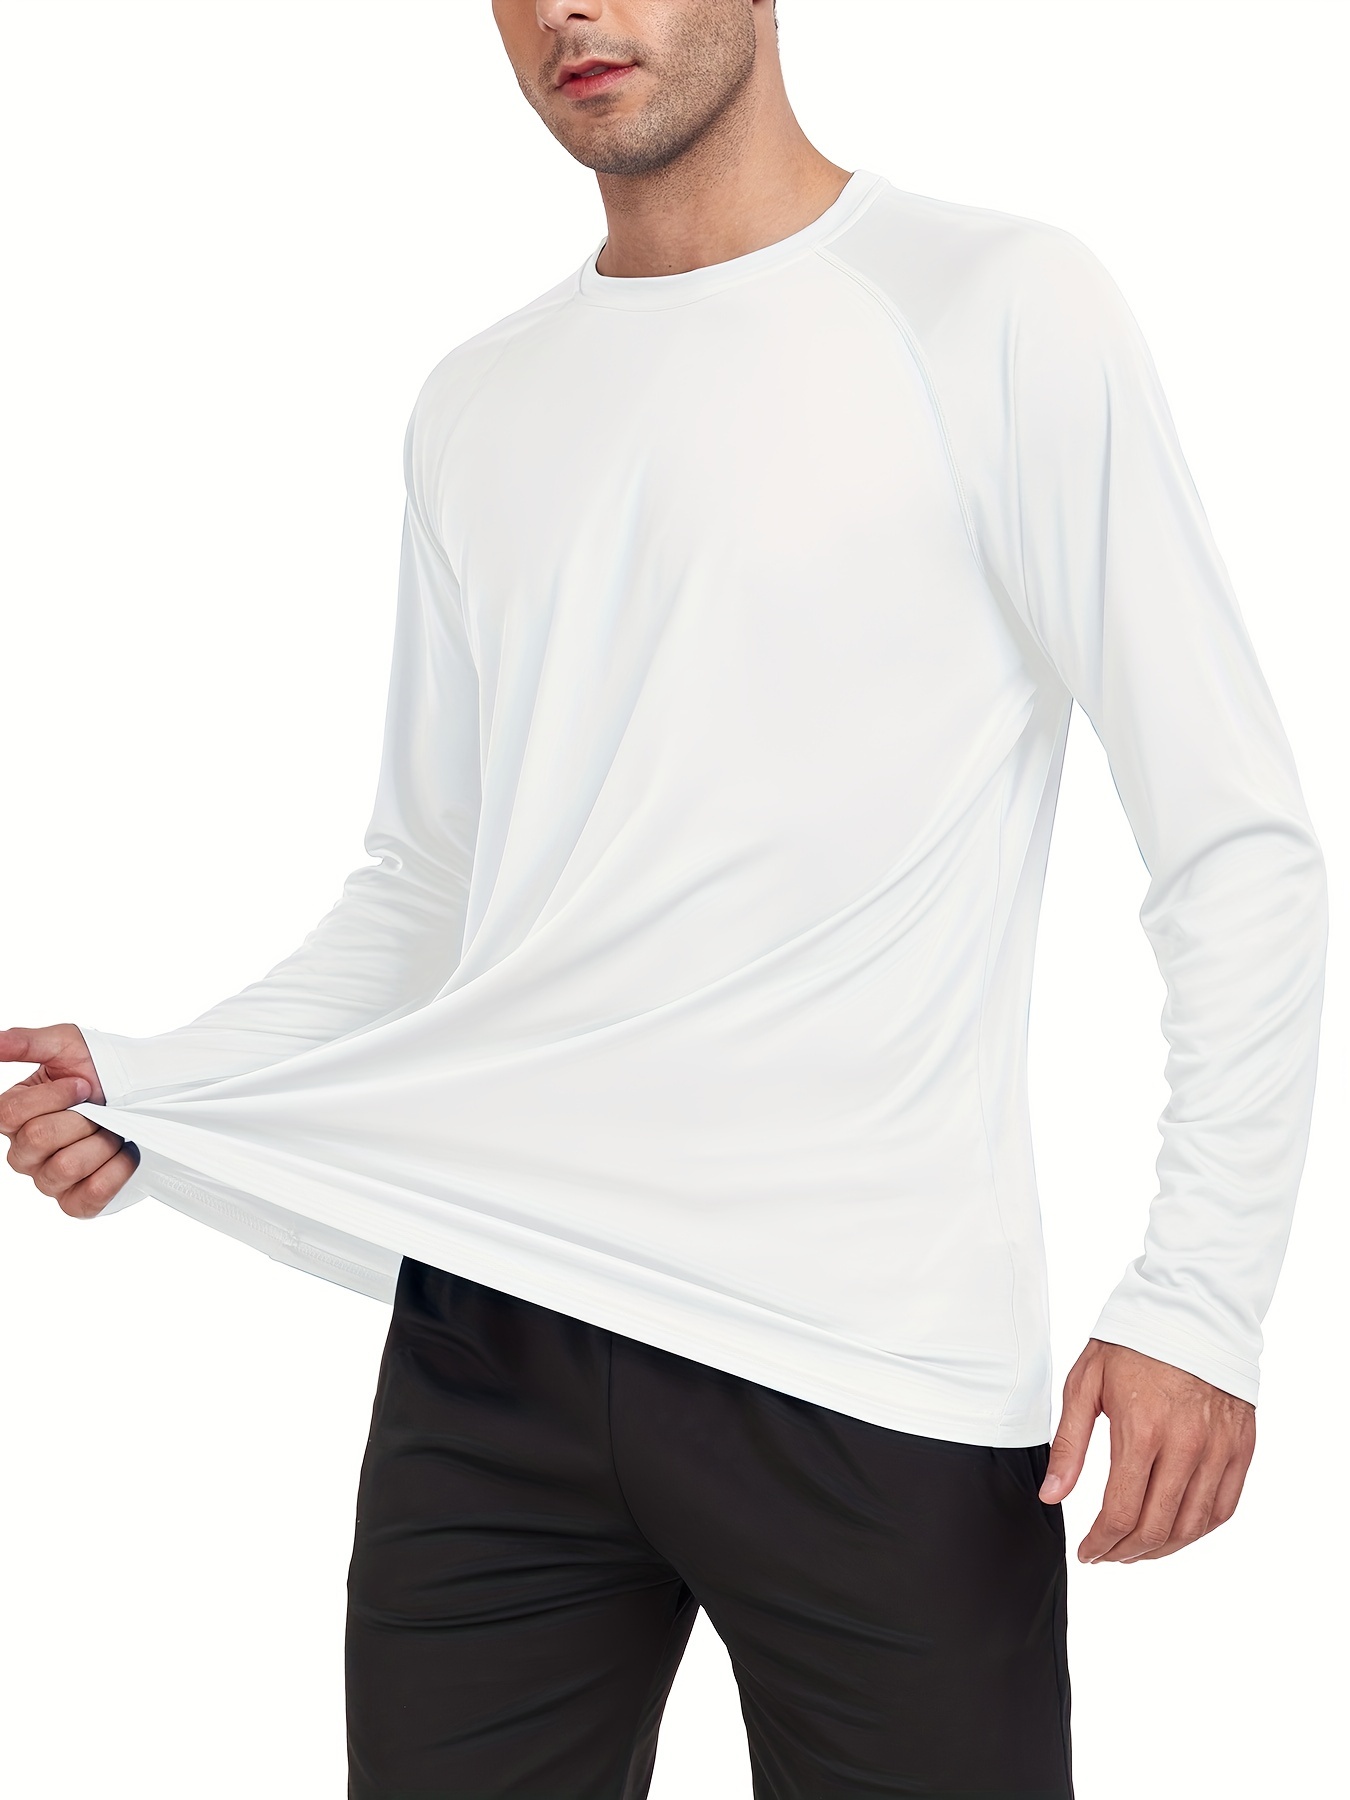 Team Pocket - Camiseta de Surf de Manga Corta con Protección Solar UPF 50  para Hombre